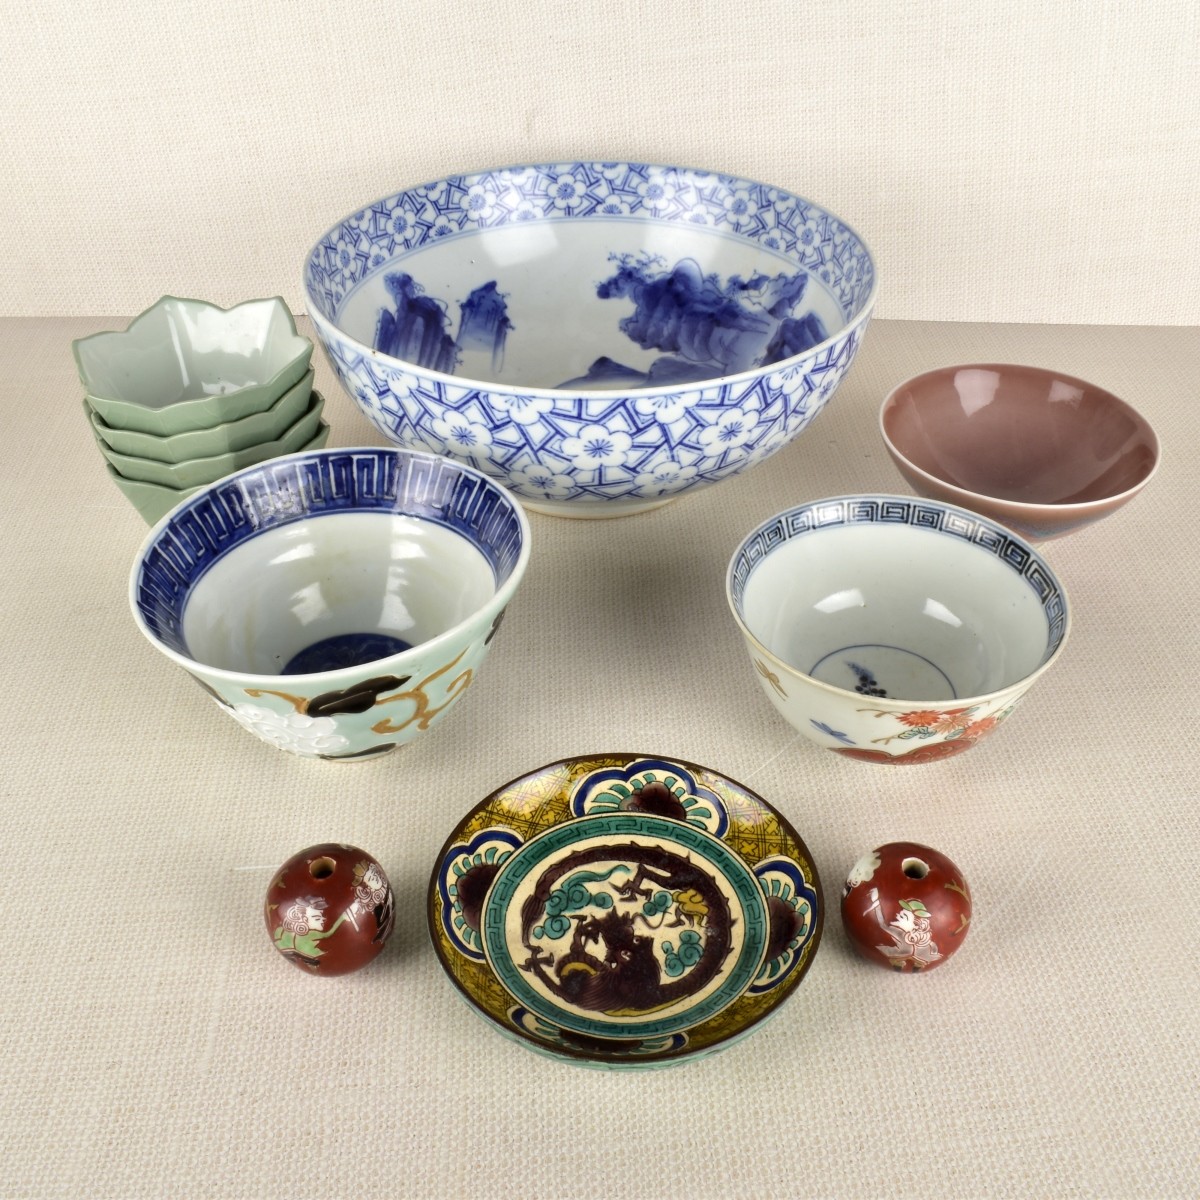 Eleven (11) Asian Porcelain Pieces